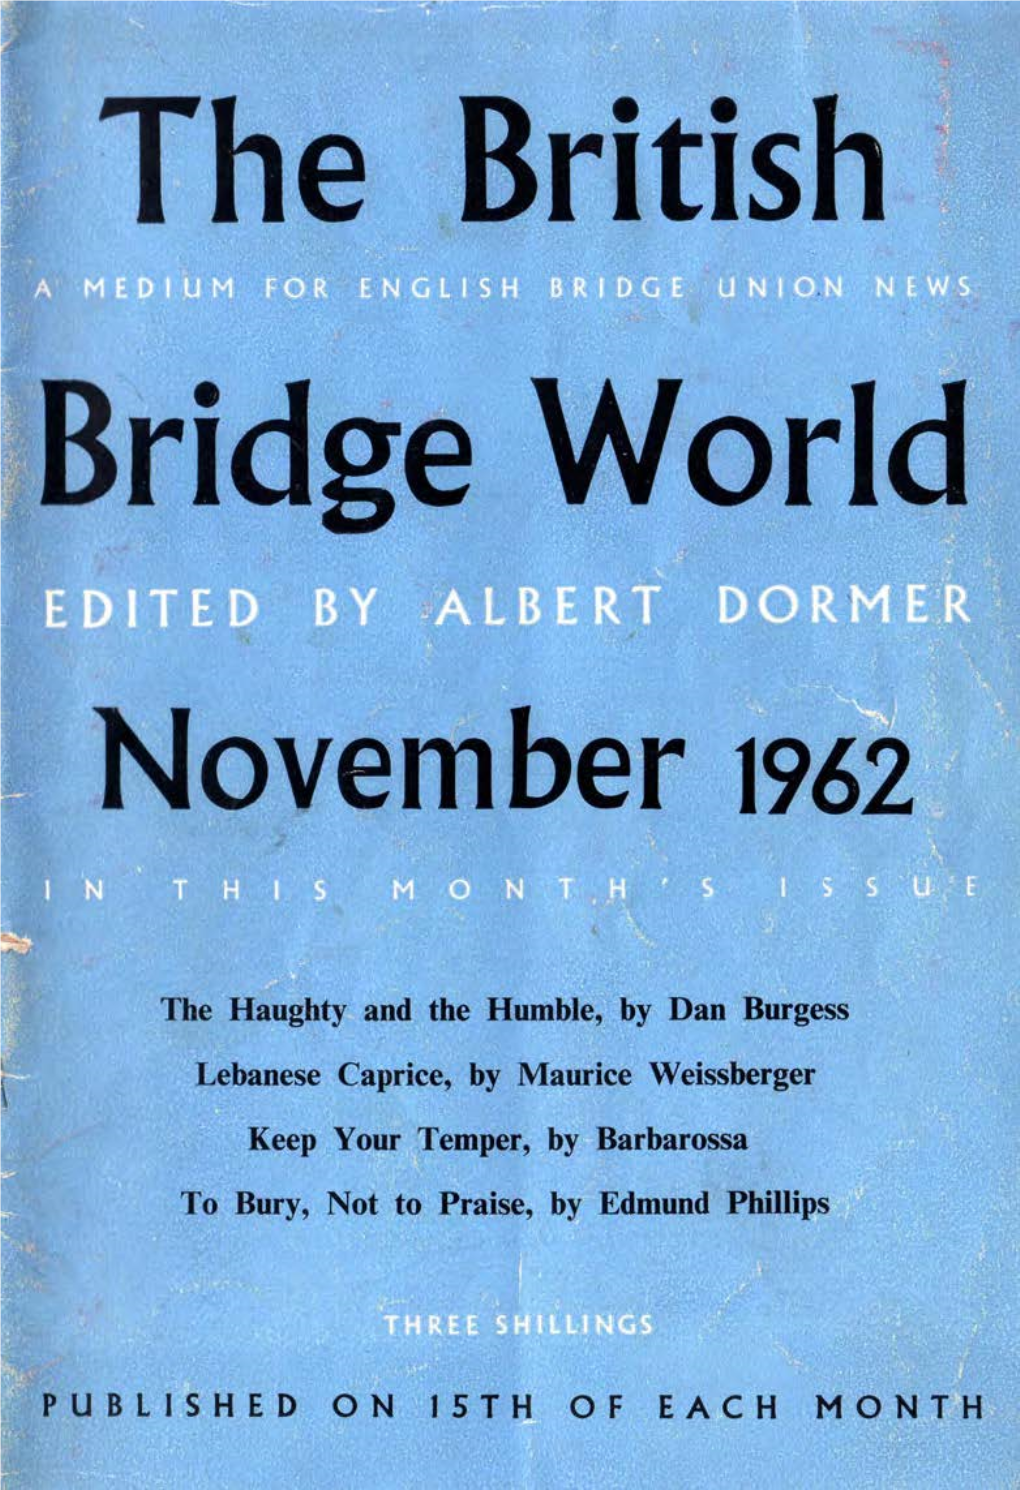 The British Bridge World